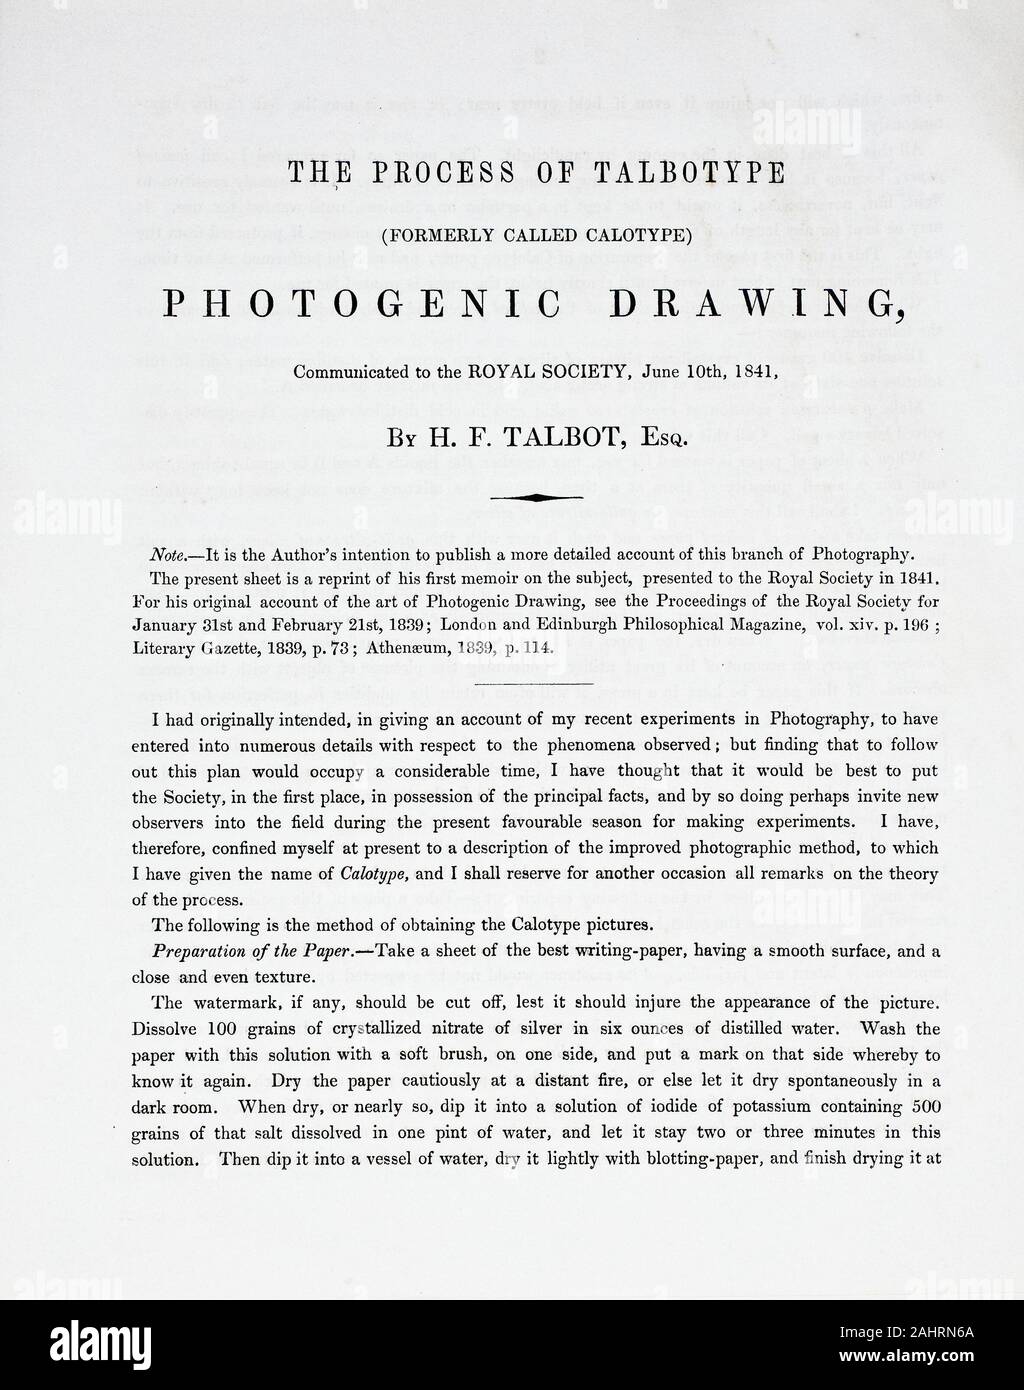 William Henry Fox Talbot. Le processus de Talbotype (anciennement appelé Calotype) Dessin photogénique. 1841. L'Angleterre. Quatre pages de texte libre (environ 2500 mots), imprimée par J. & H. Cox Brothers Banque D'Images